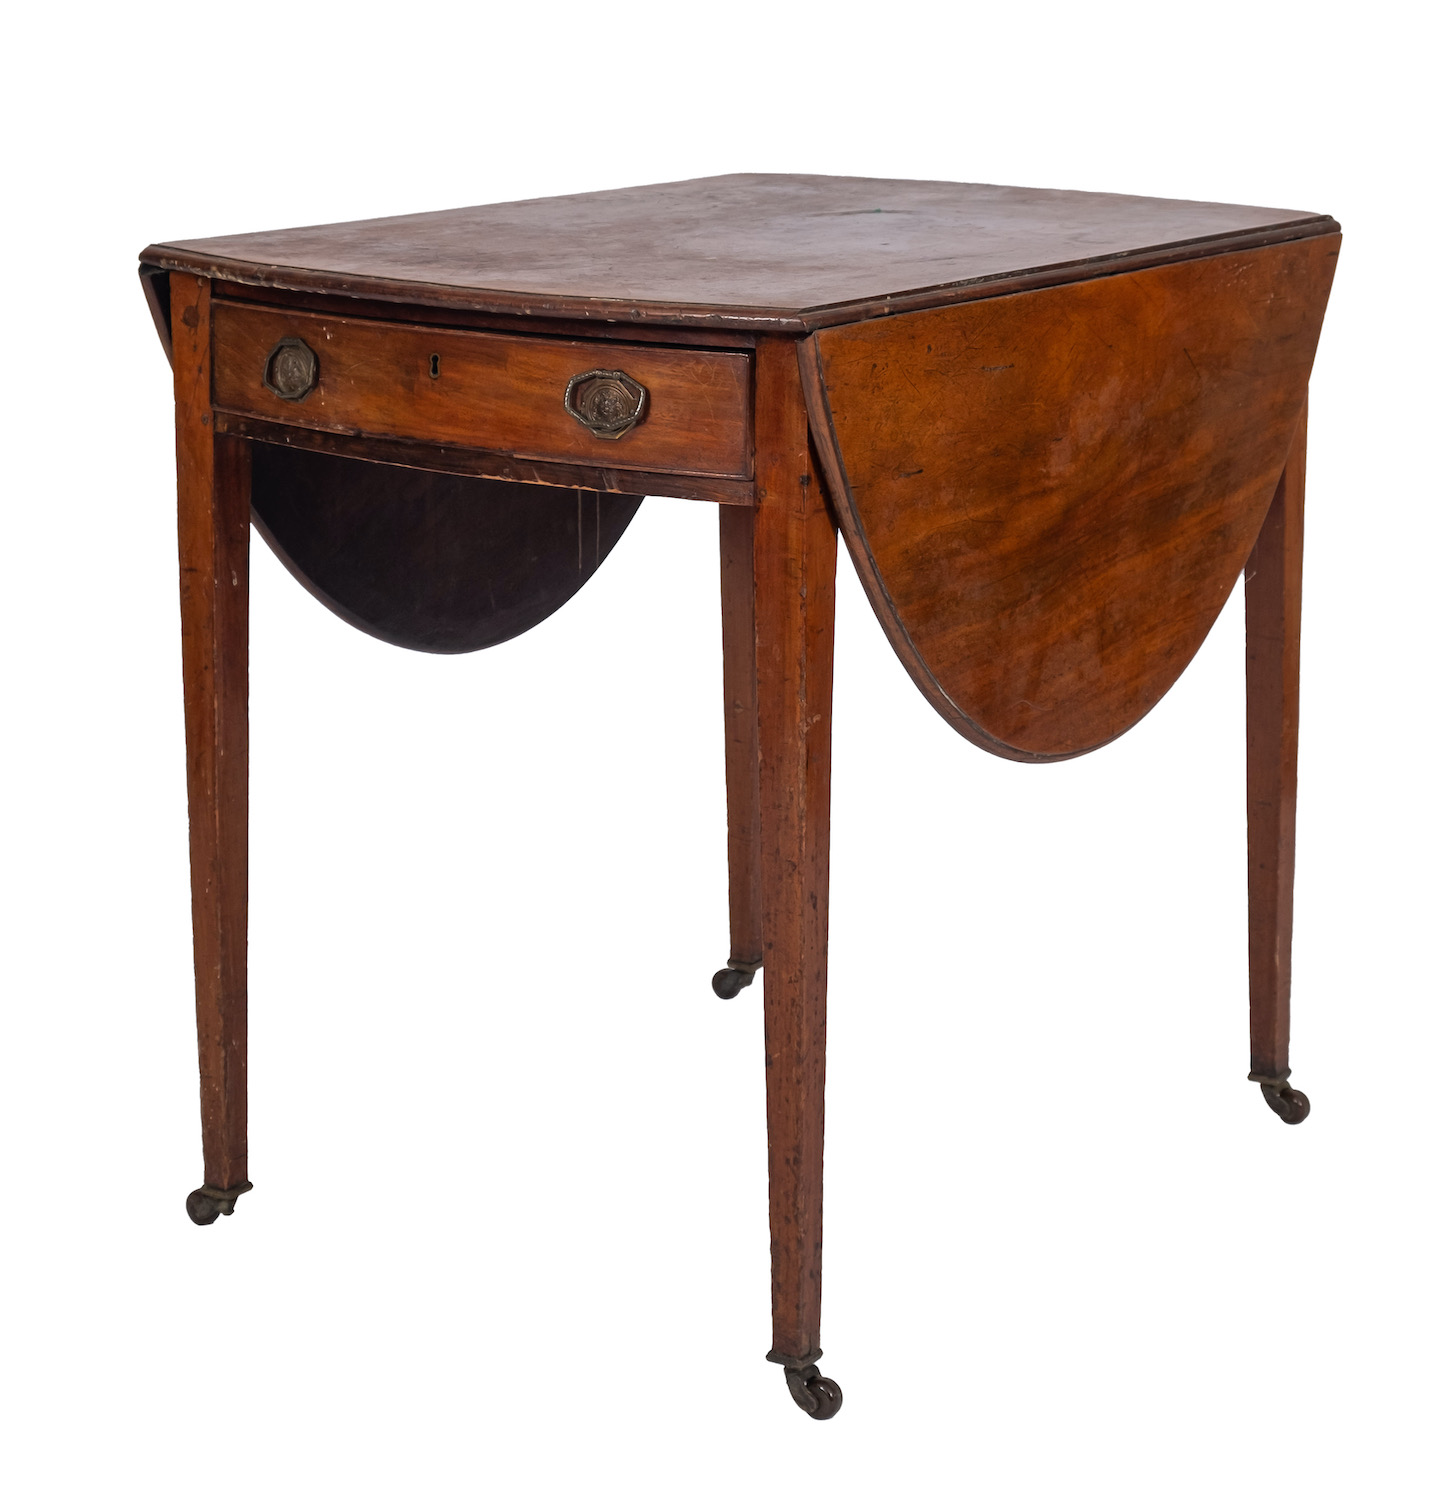 A George III mahogany Pembroke table, la